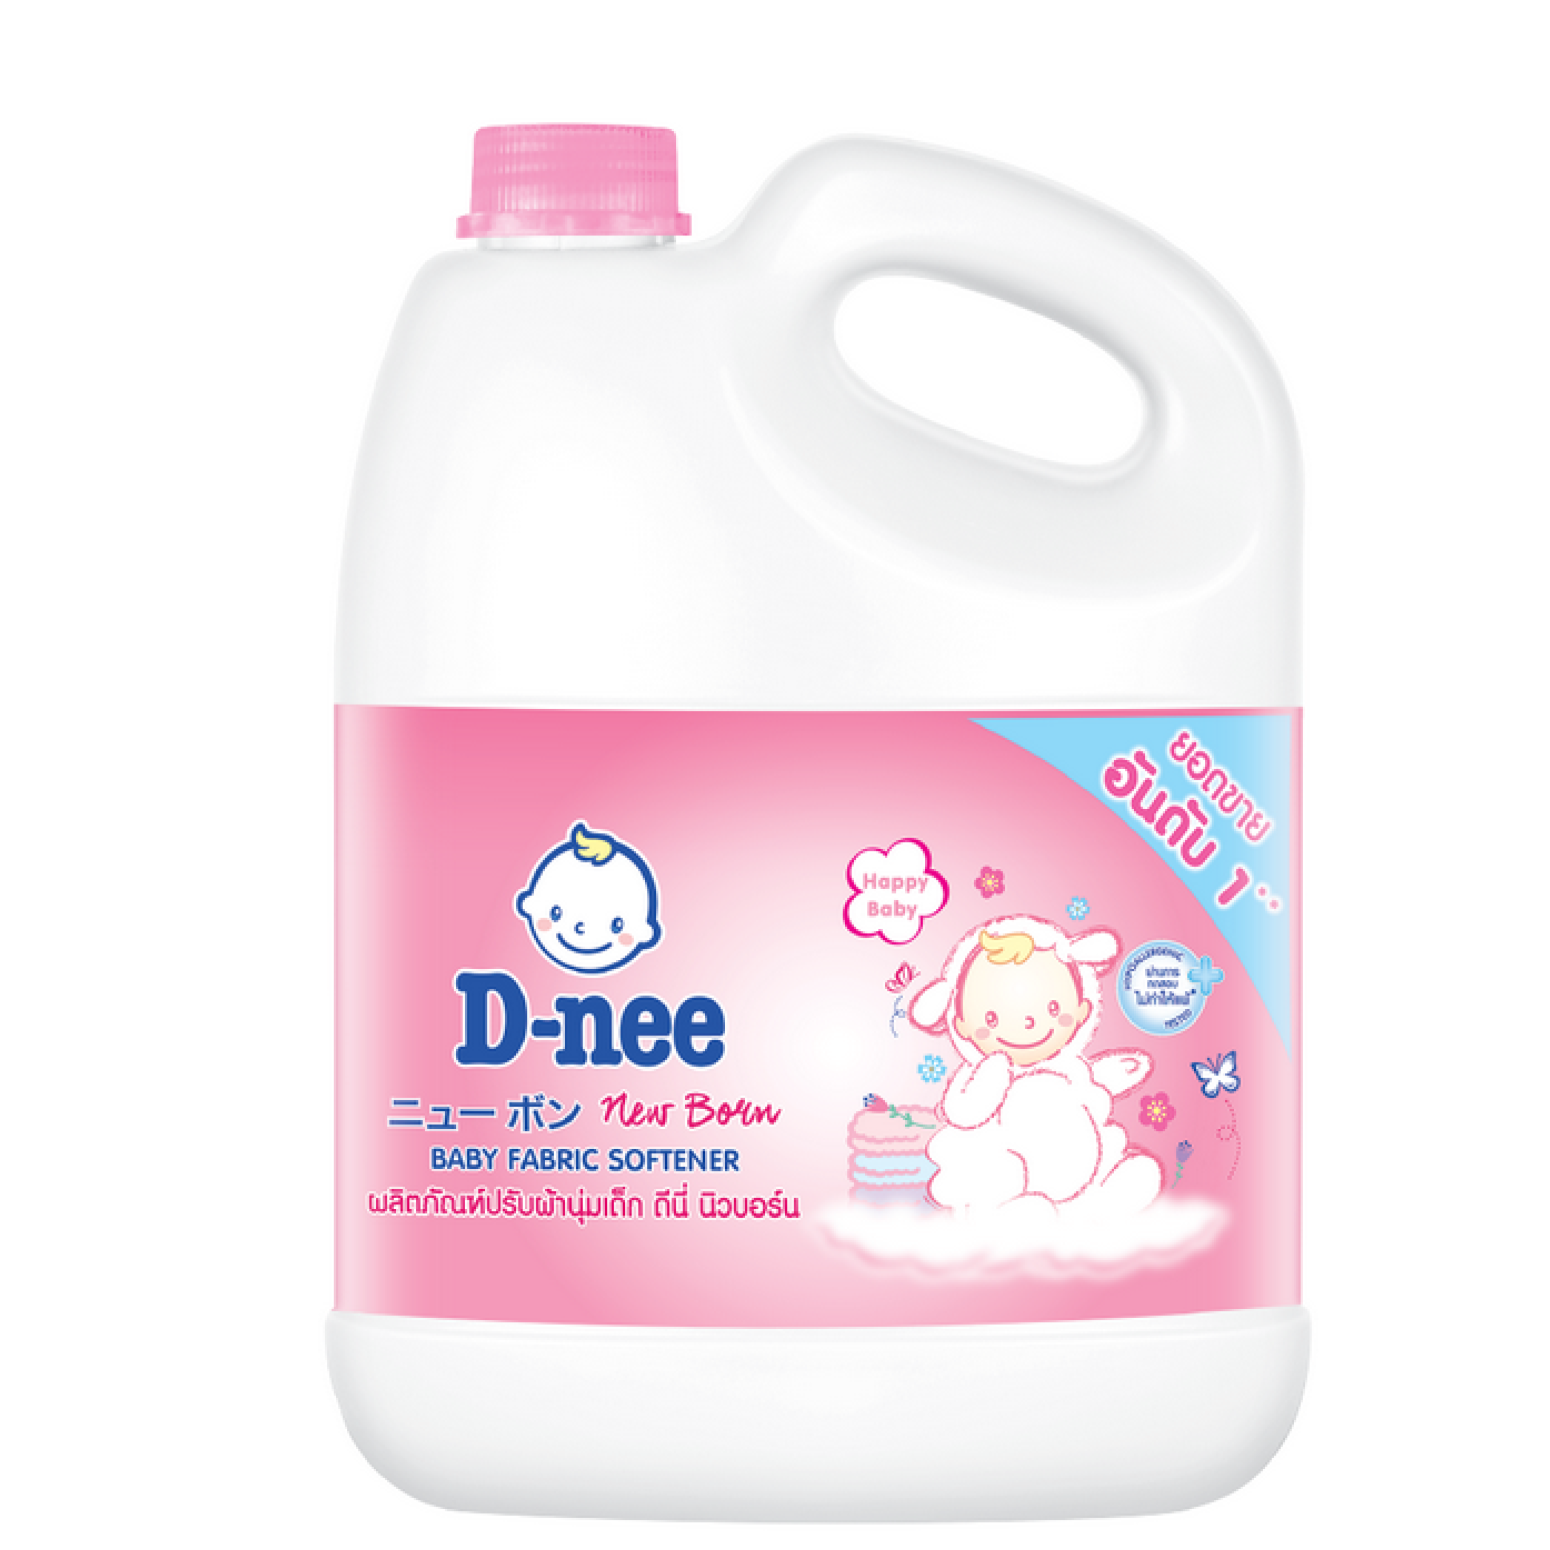 D-nee Baby Fabric Softener Pink Newborn